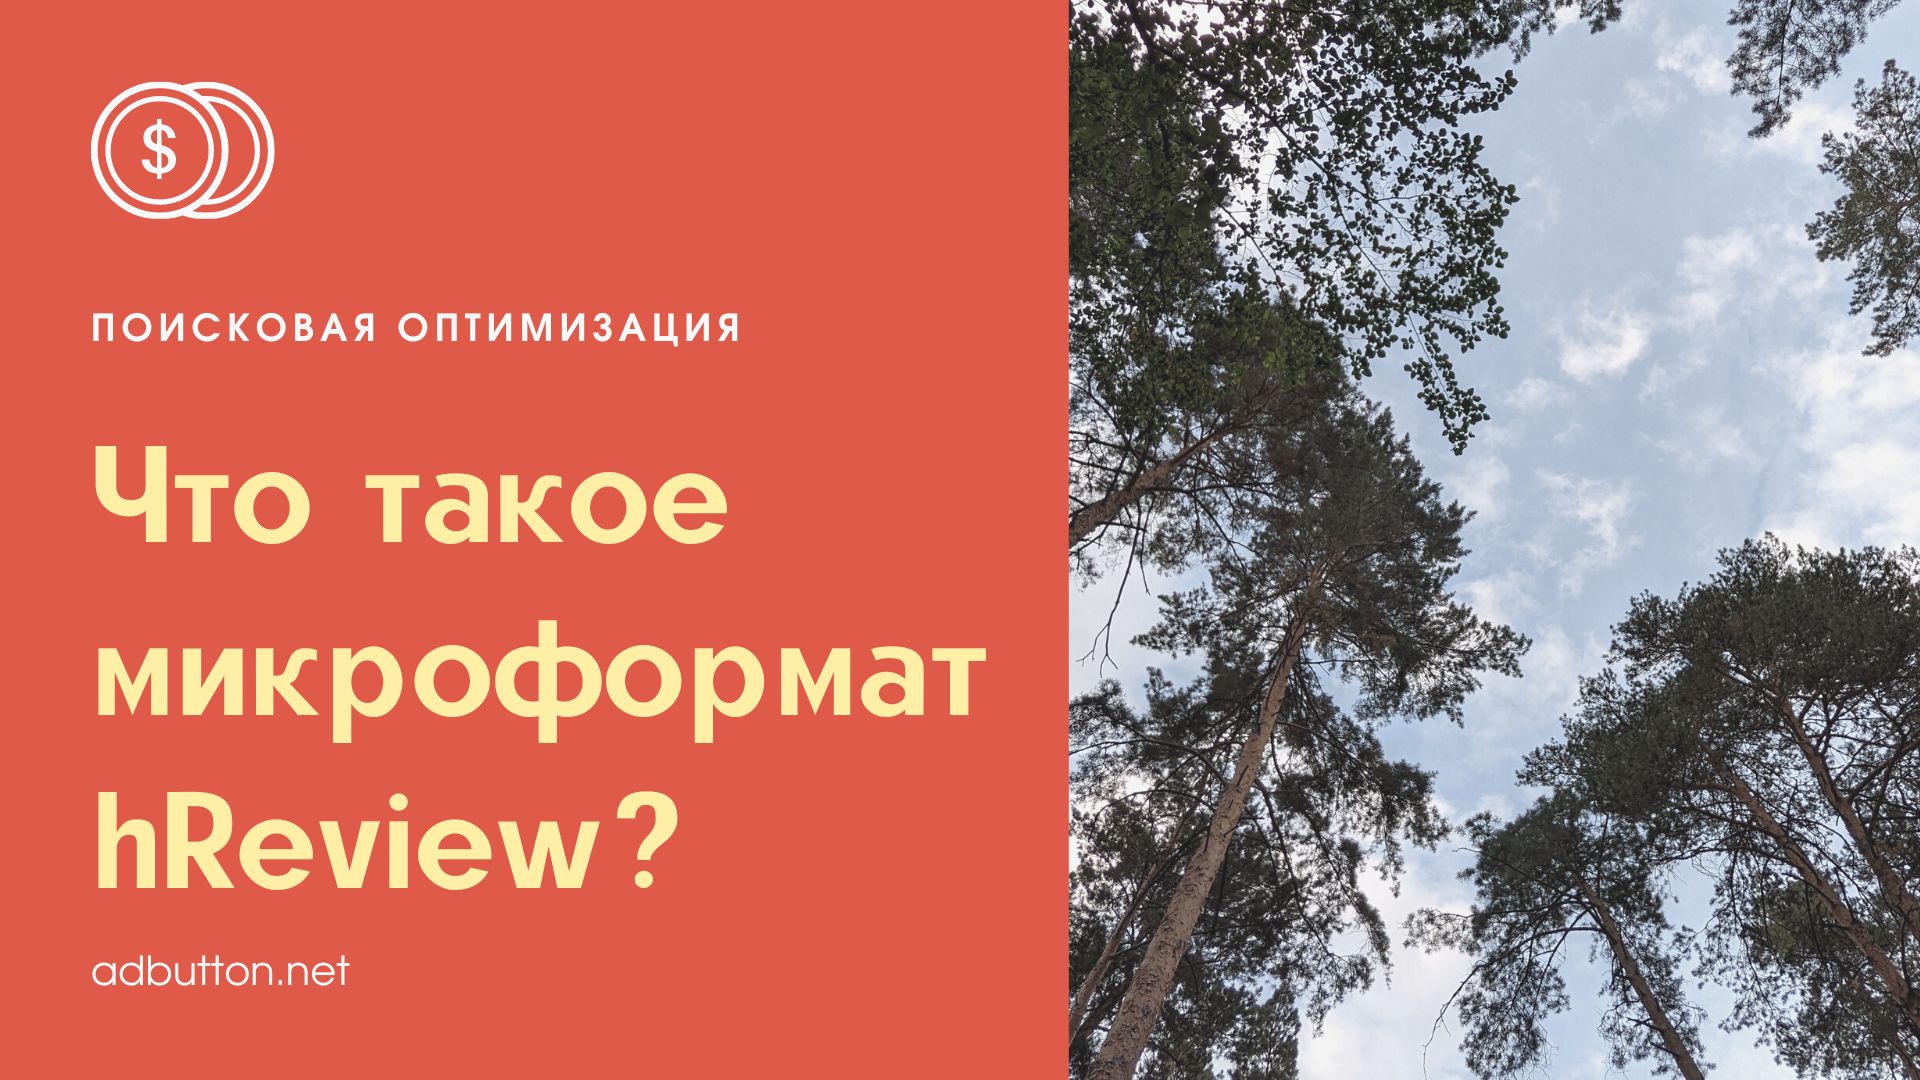 Что такое микроформат hReview и как он влияет оптимзацию в Яндекс?